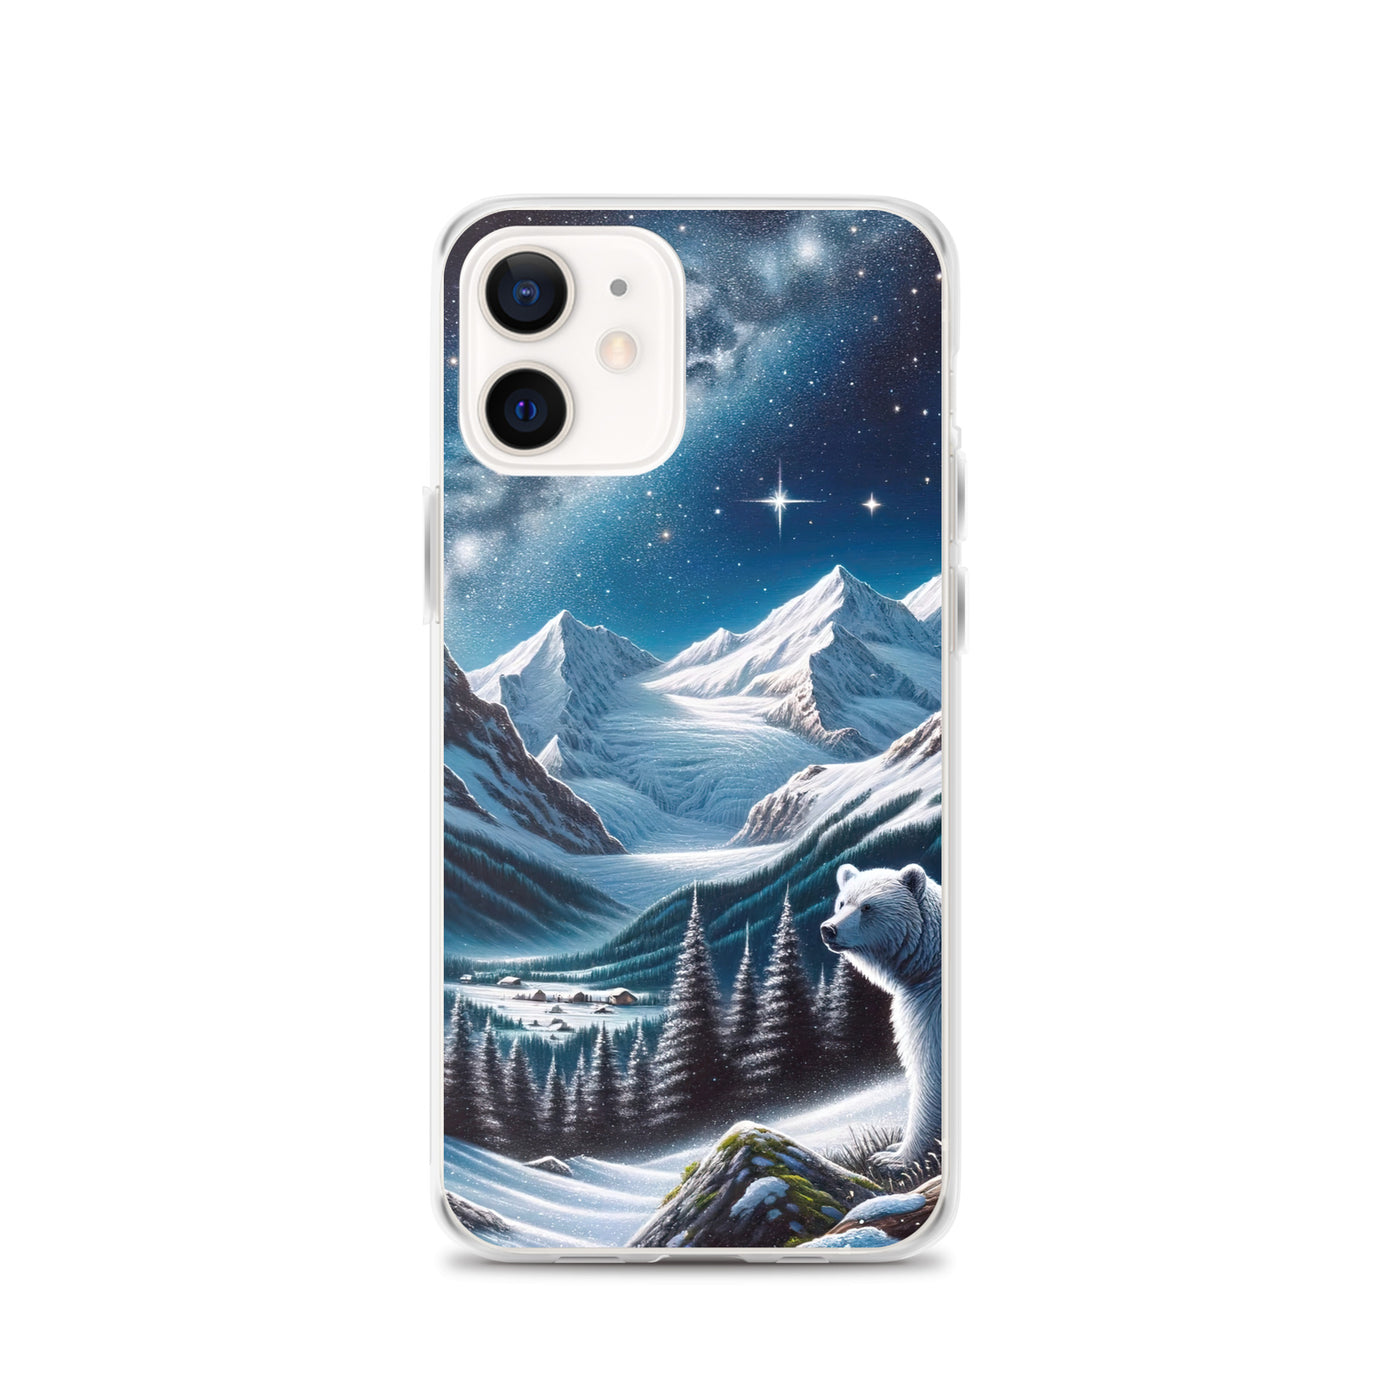 Sternennacht und Eisbär: Acrylgemälde mit Milchstraße, Alpen und schneebedeckte Gipfel - iPhone Schutzhülle (durchsichtig) camping xxx yyy zzz iPhone 12